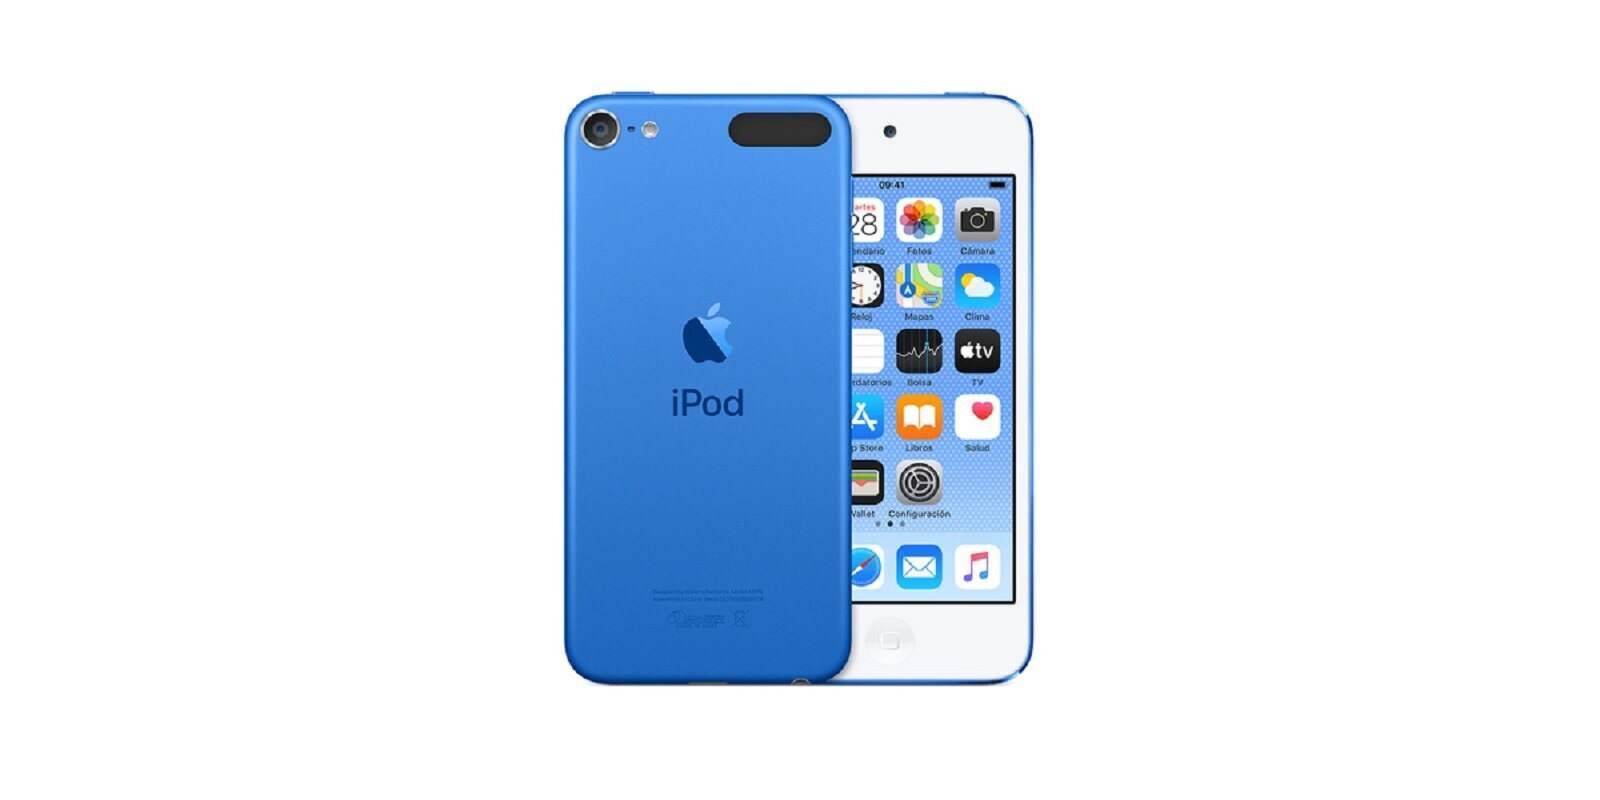 Apple descataloga el iPod touch, que dejará de existir cuando se agoten las existencias